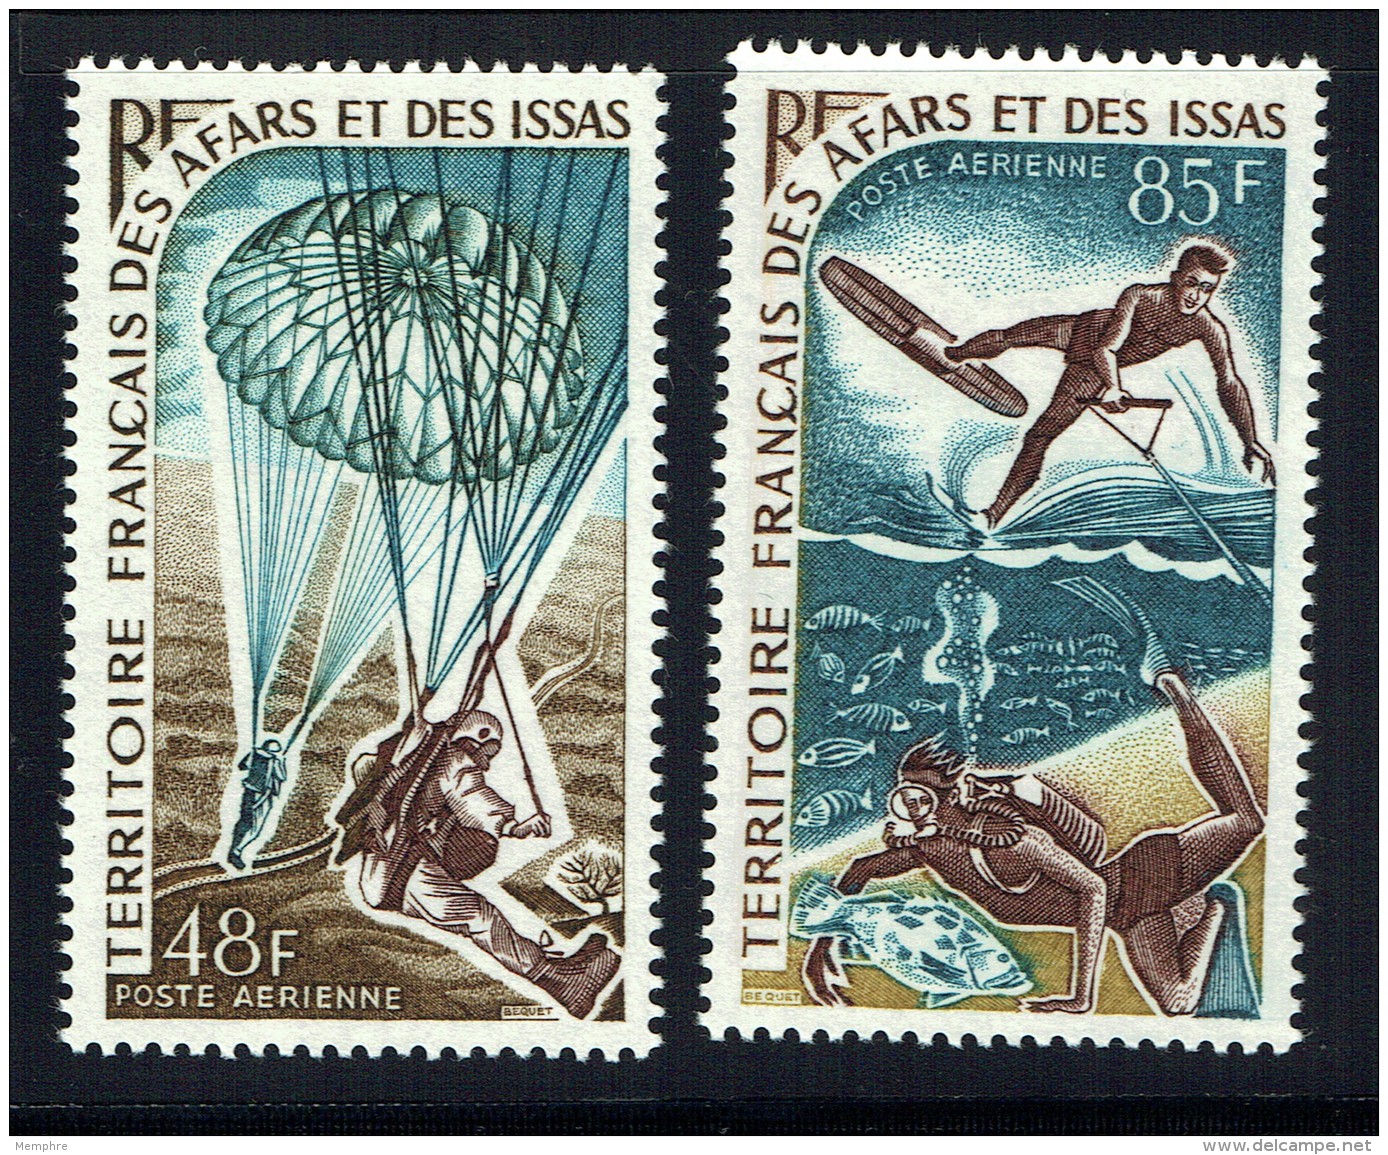 1968    Parachutisme Et Sports Nautiques  Yv 57-8   ** - Neufs